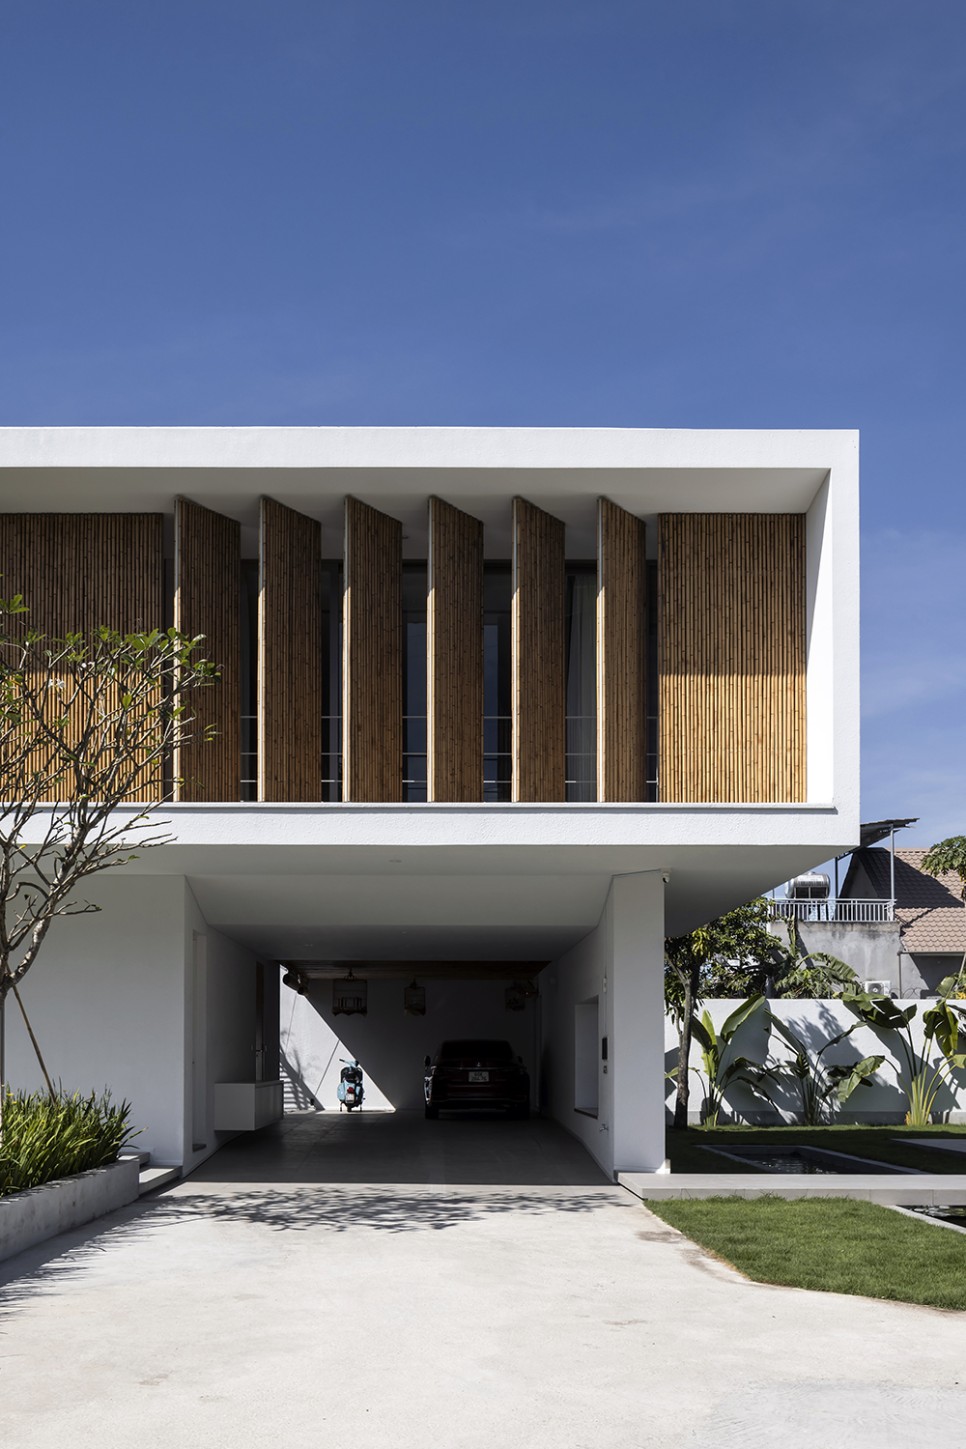 대나무로 친숙미를 더한 현대식 베트남 주택, Long Thanh Villa by Km Architecture Office